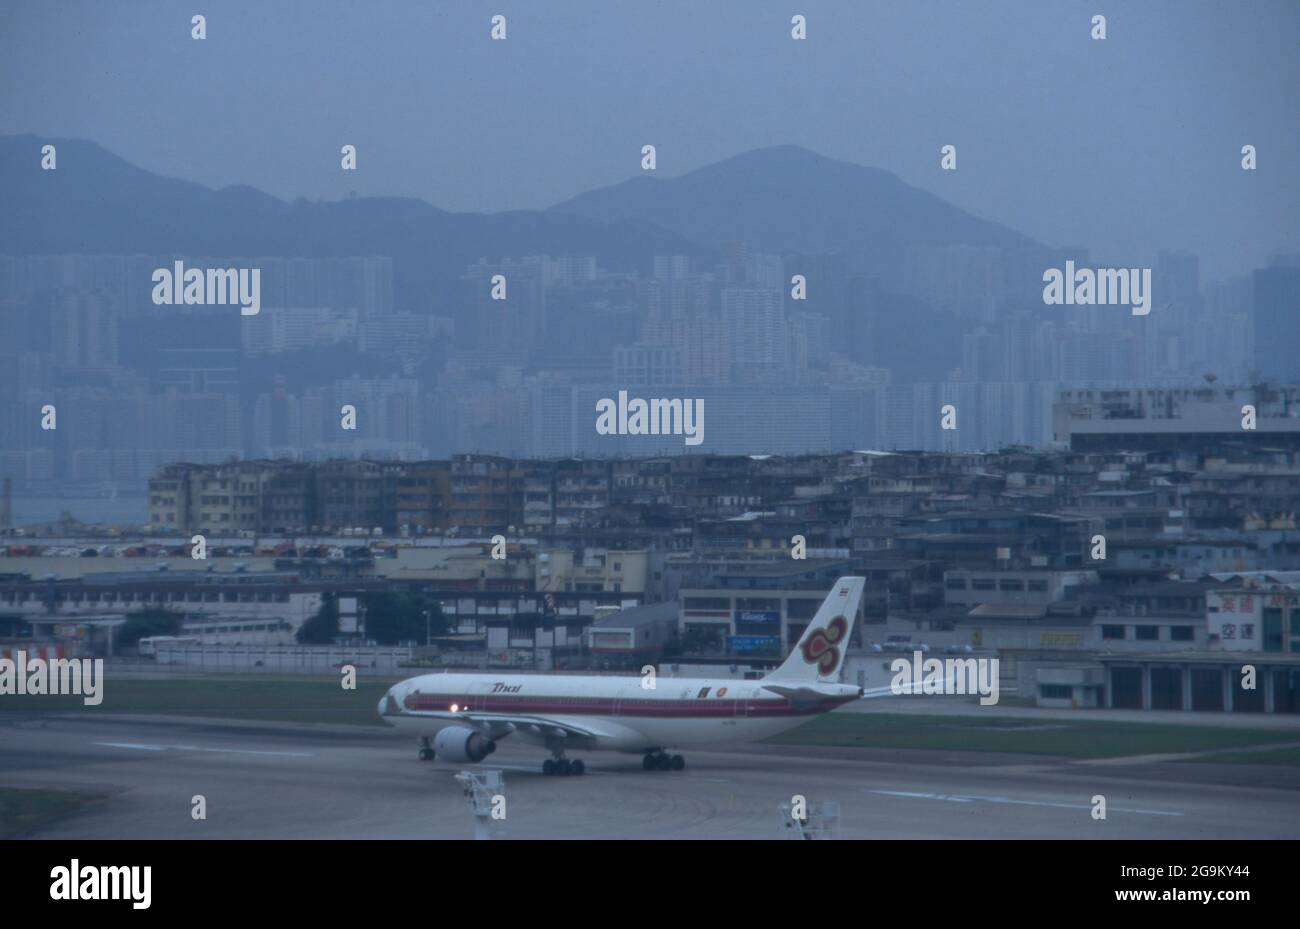 Thailändisches Flugzeug im Anflug auf den alten Flughafen a Hongkong, Cina 1998. Aereo tailandese atterrando sul vecchio aeroporto di Hong Kong, Cina 1998. Foto Stock